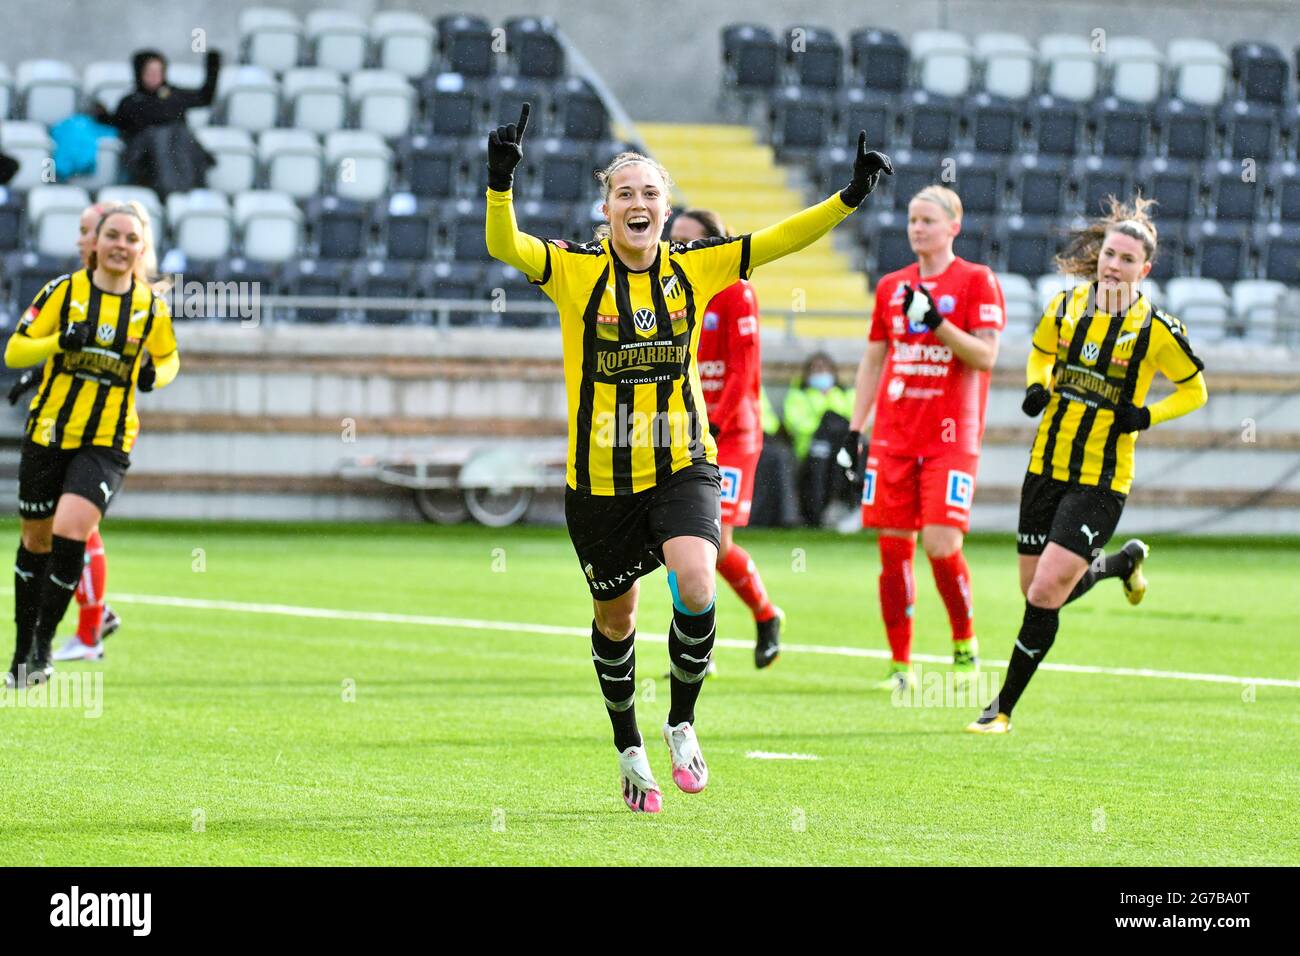 Fotboll, Svenska Cupen, Häcken - Linköping Stock Photo - Alamy